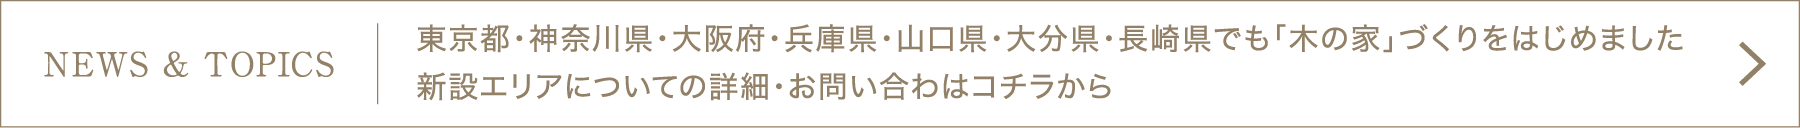 NEWS & TOPICS]東京都・神奈川県・大阪府・兵庫県・山口県・大分県・長崎県でも「木の家」づくりをはじめました。新設エリアについての詳細・お問い合わはコチラから